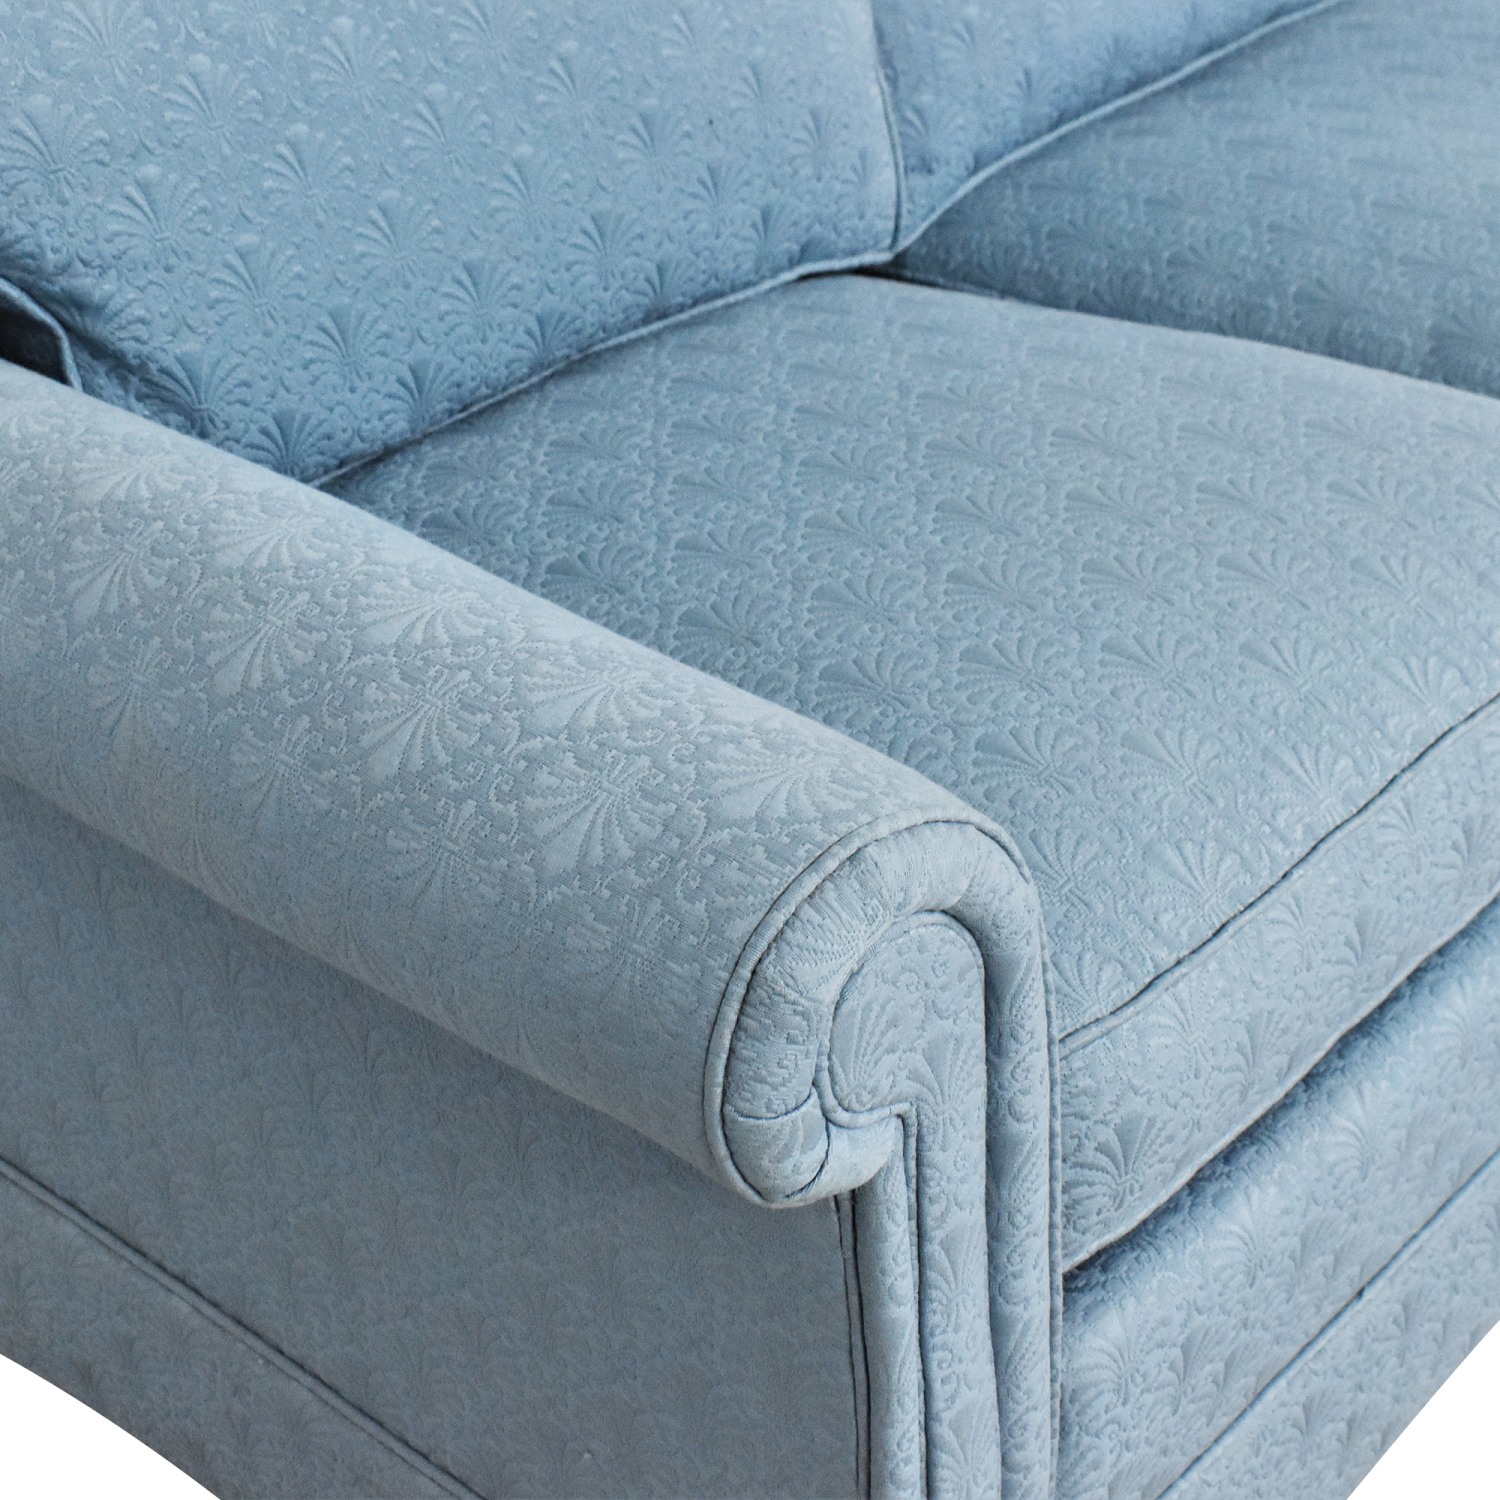 Custom Cushions for Sherrill Furniture